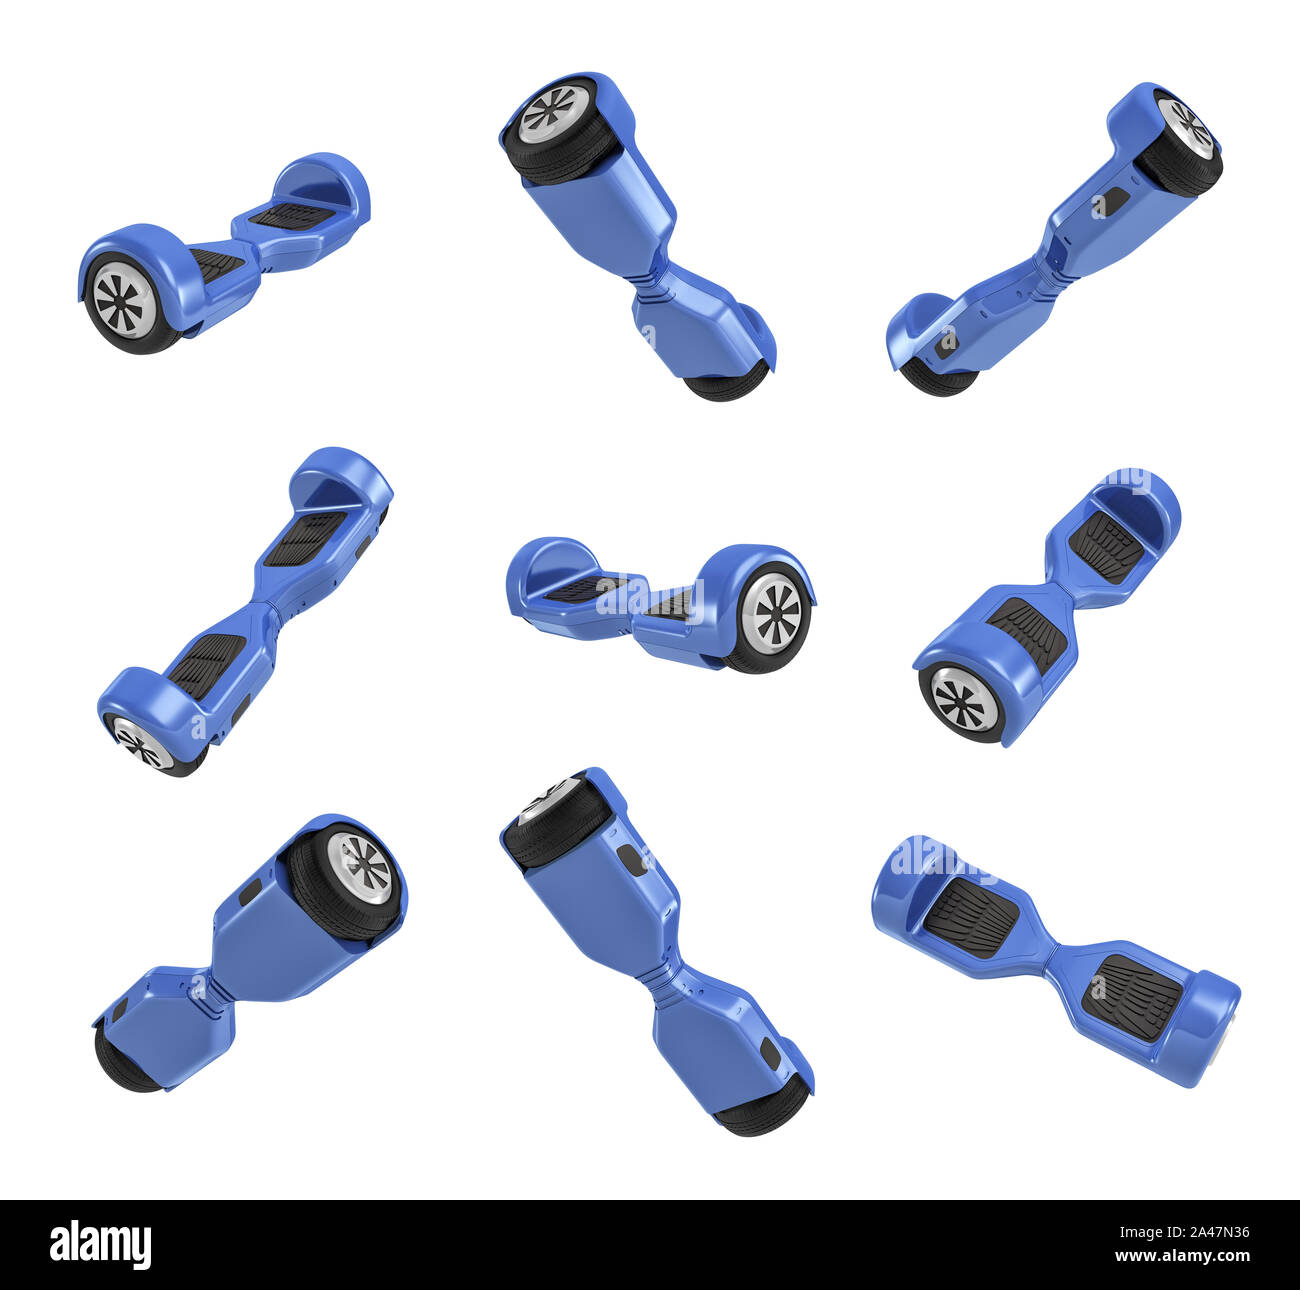 3D-Rendering von mehreren Blau selbstausgleichenden Roller in verschiedenen Winkeln auf weißem Hintergrund. Persönlicher Transport. Das städtische Leben. Elektrische gyrosc Stockfoto